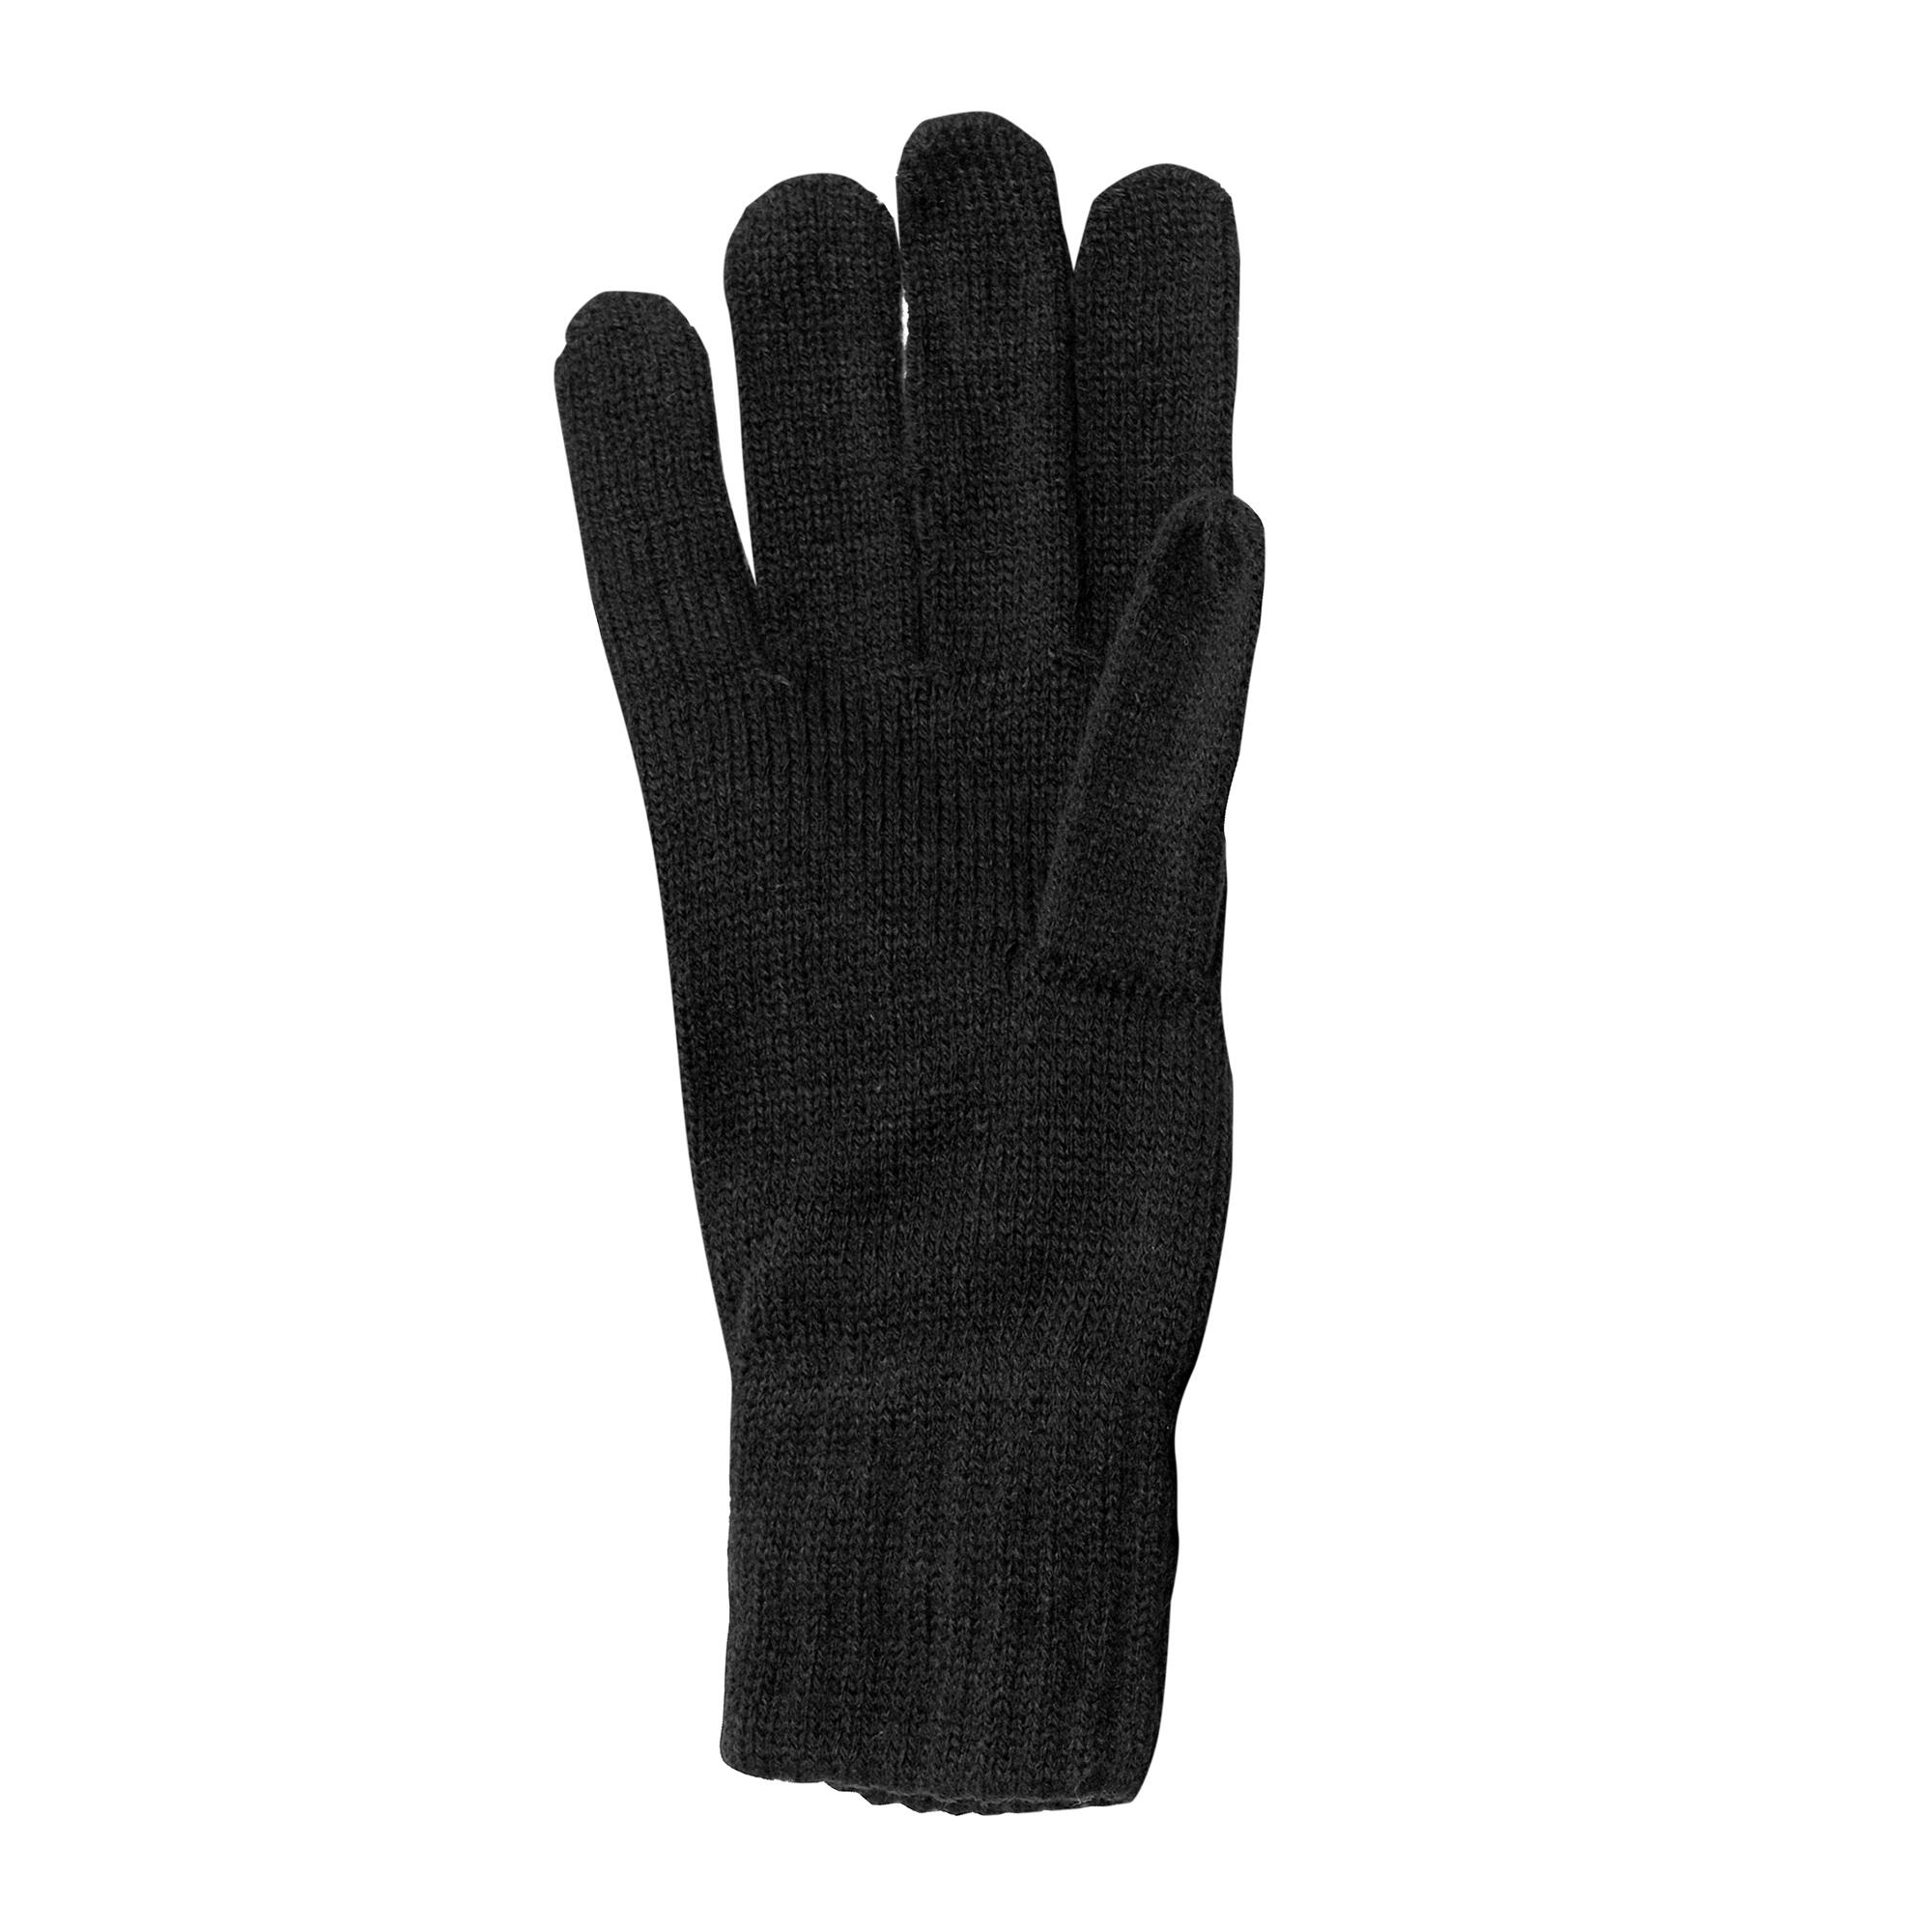 REGATTA Unisex Knitted Winter Gloves (Black)